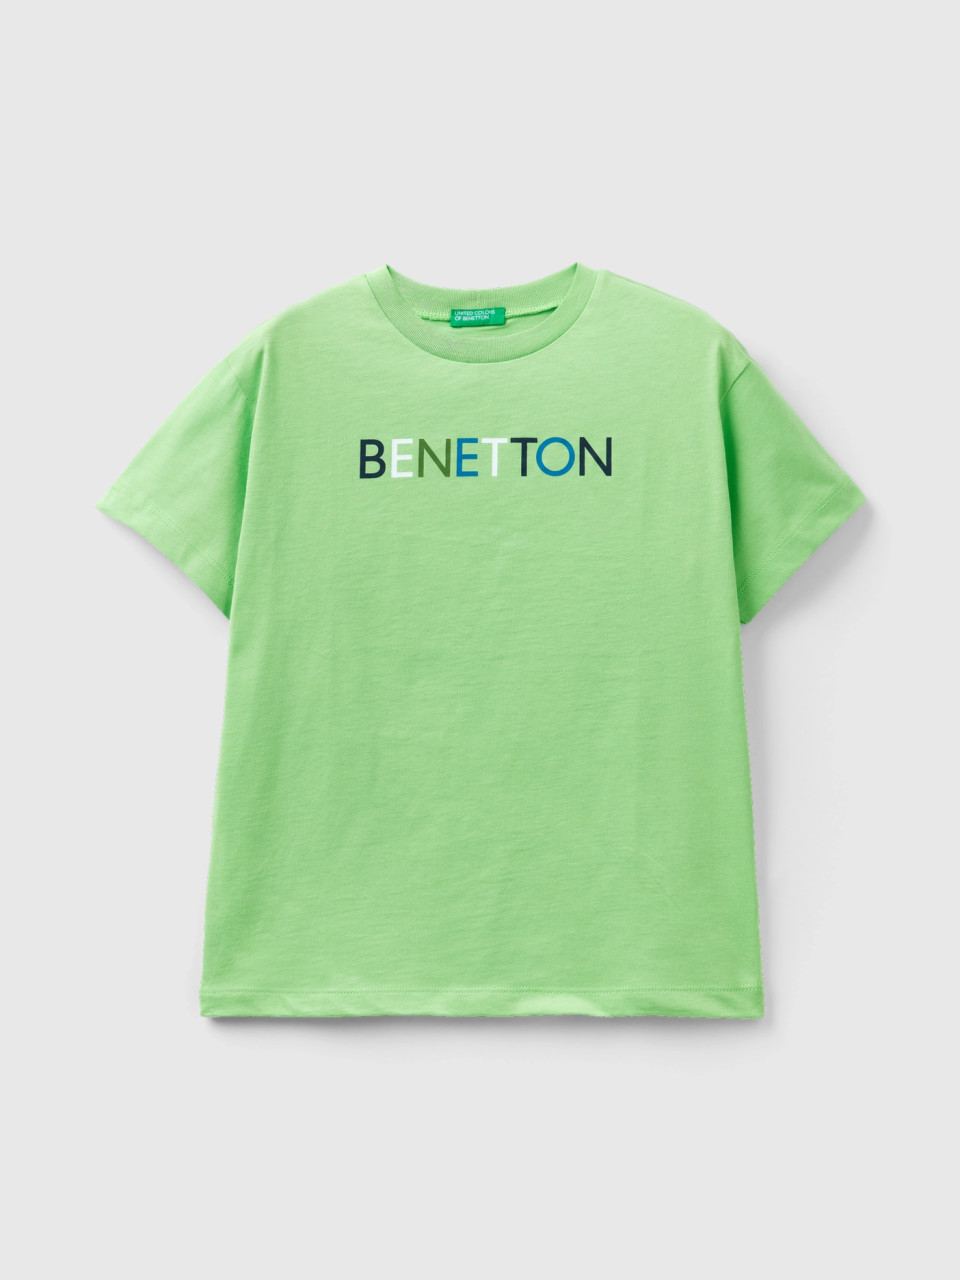 Benetton, 100% Organic Cotton T-shirt, Light Green, Kids